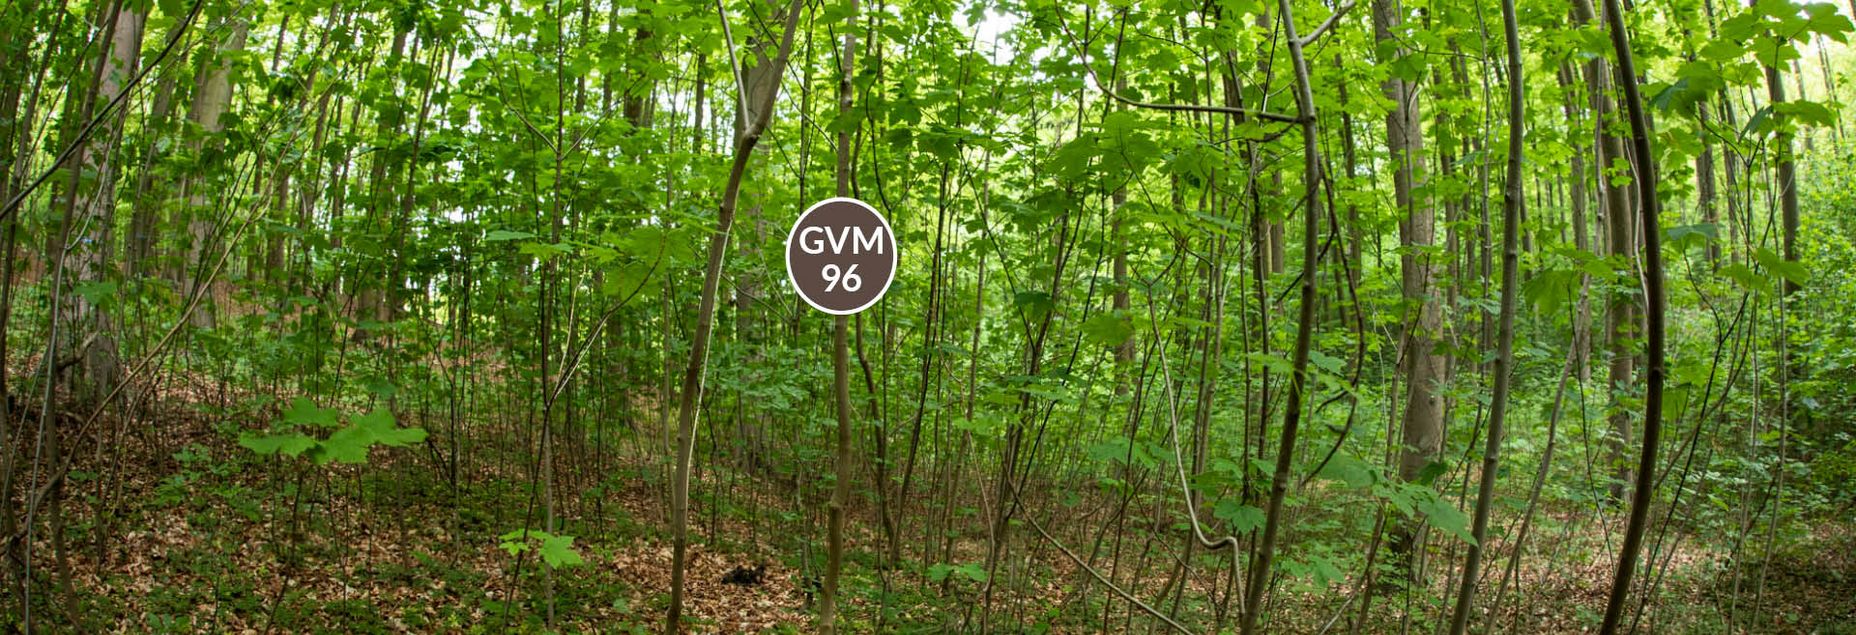 Baum GVM 96 - Fisheyeperspektive